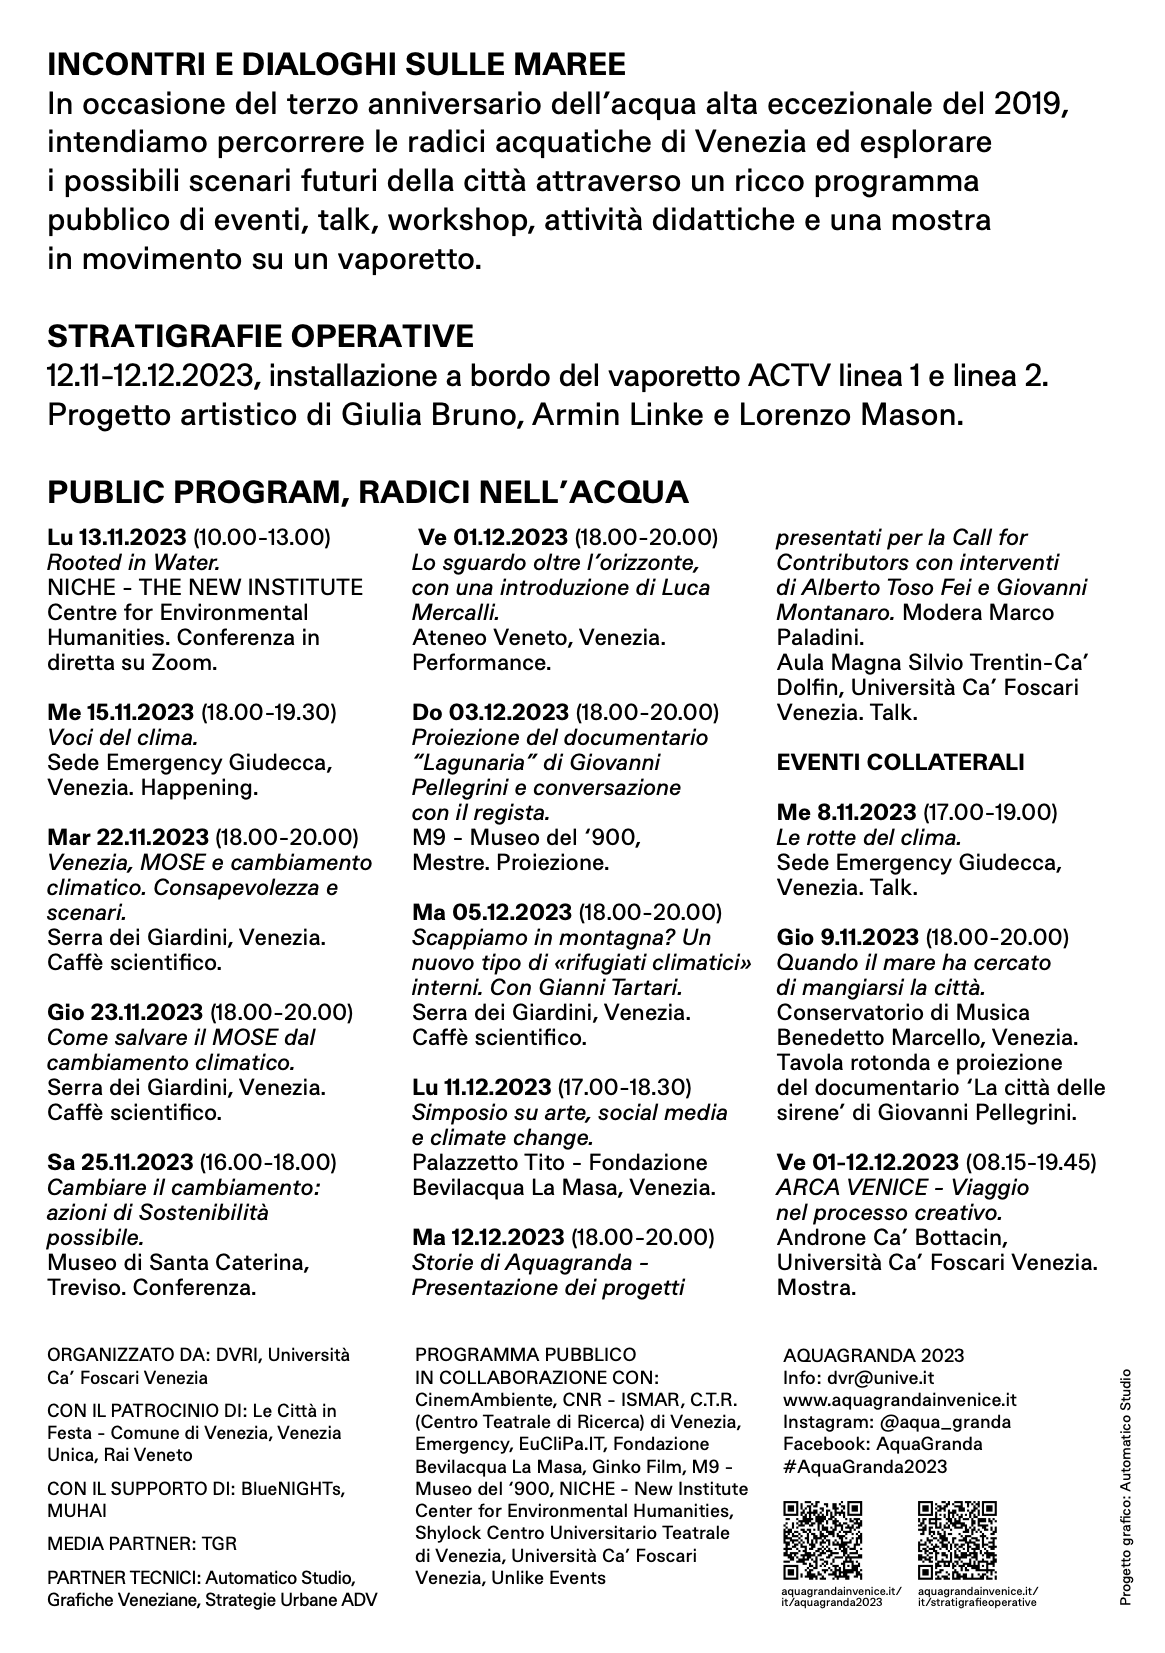 programma pubblico